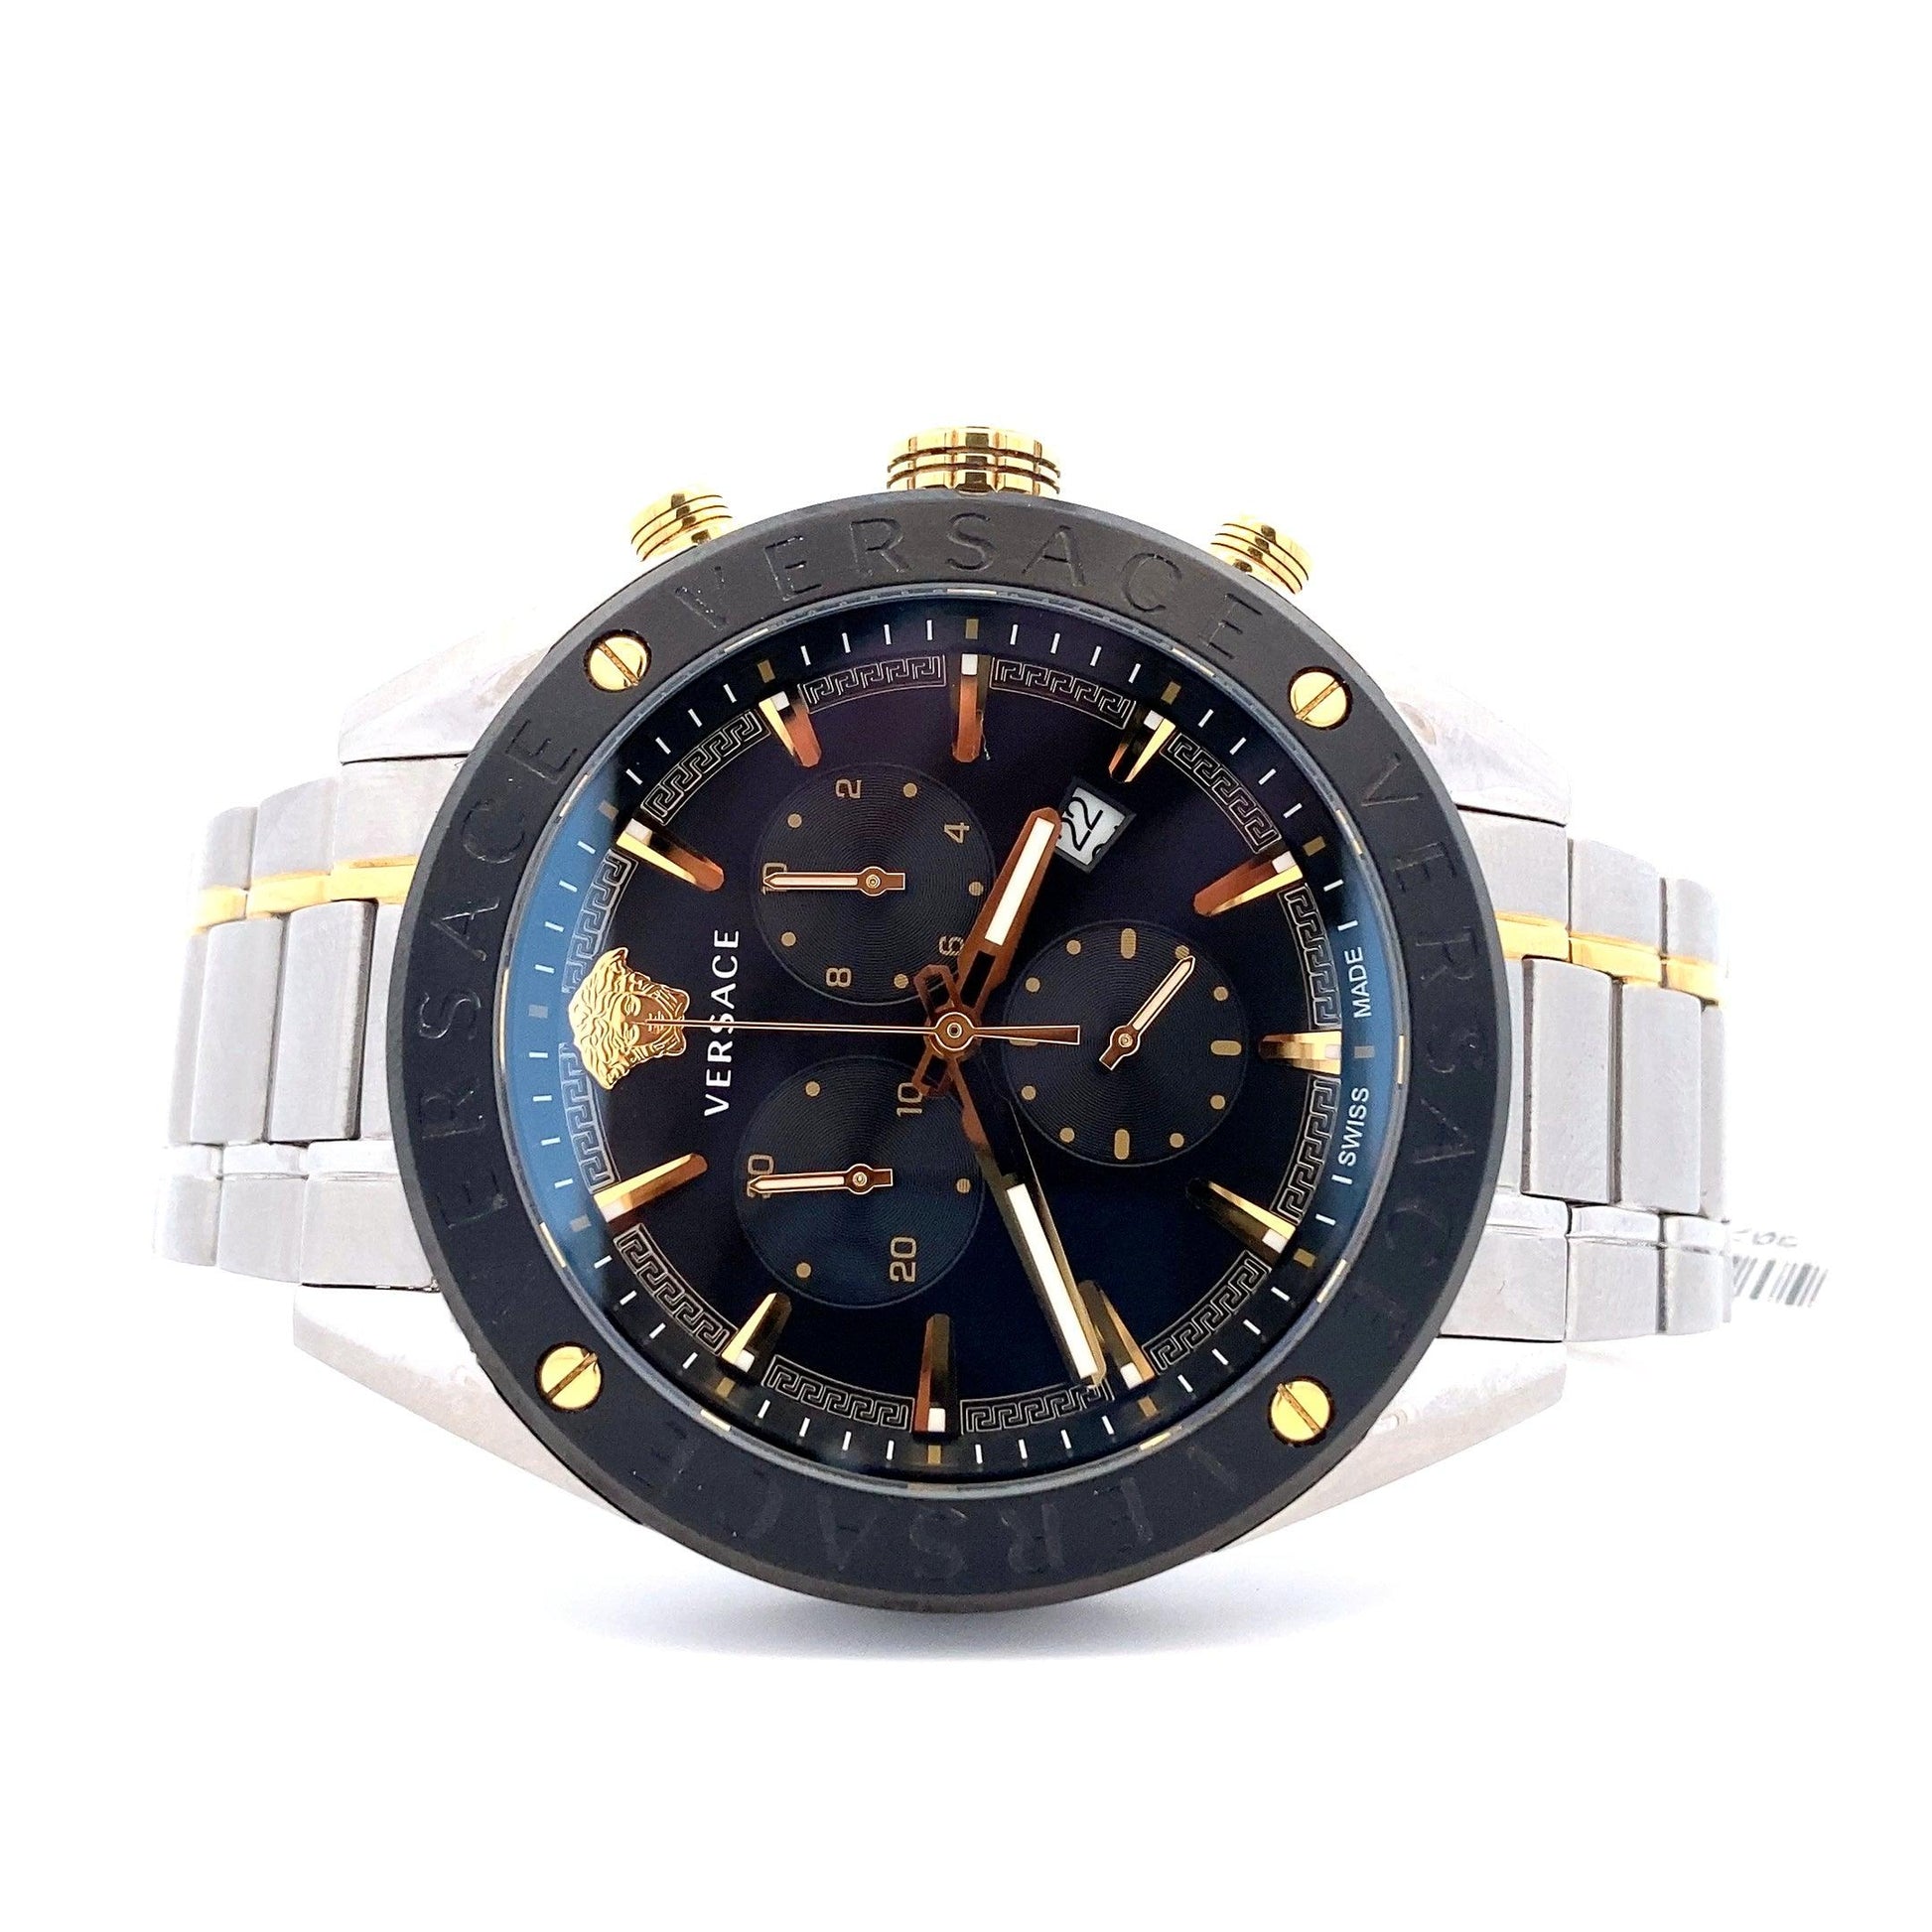 Reloj Cronografo Versace Acero Inoxidable Plata y Oro - ipawnishop.com